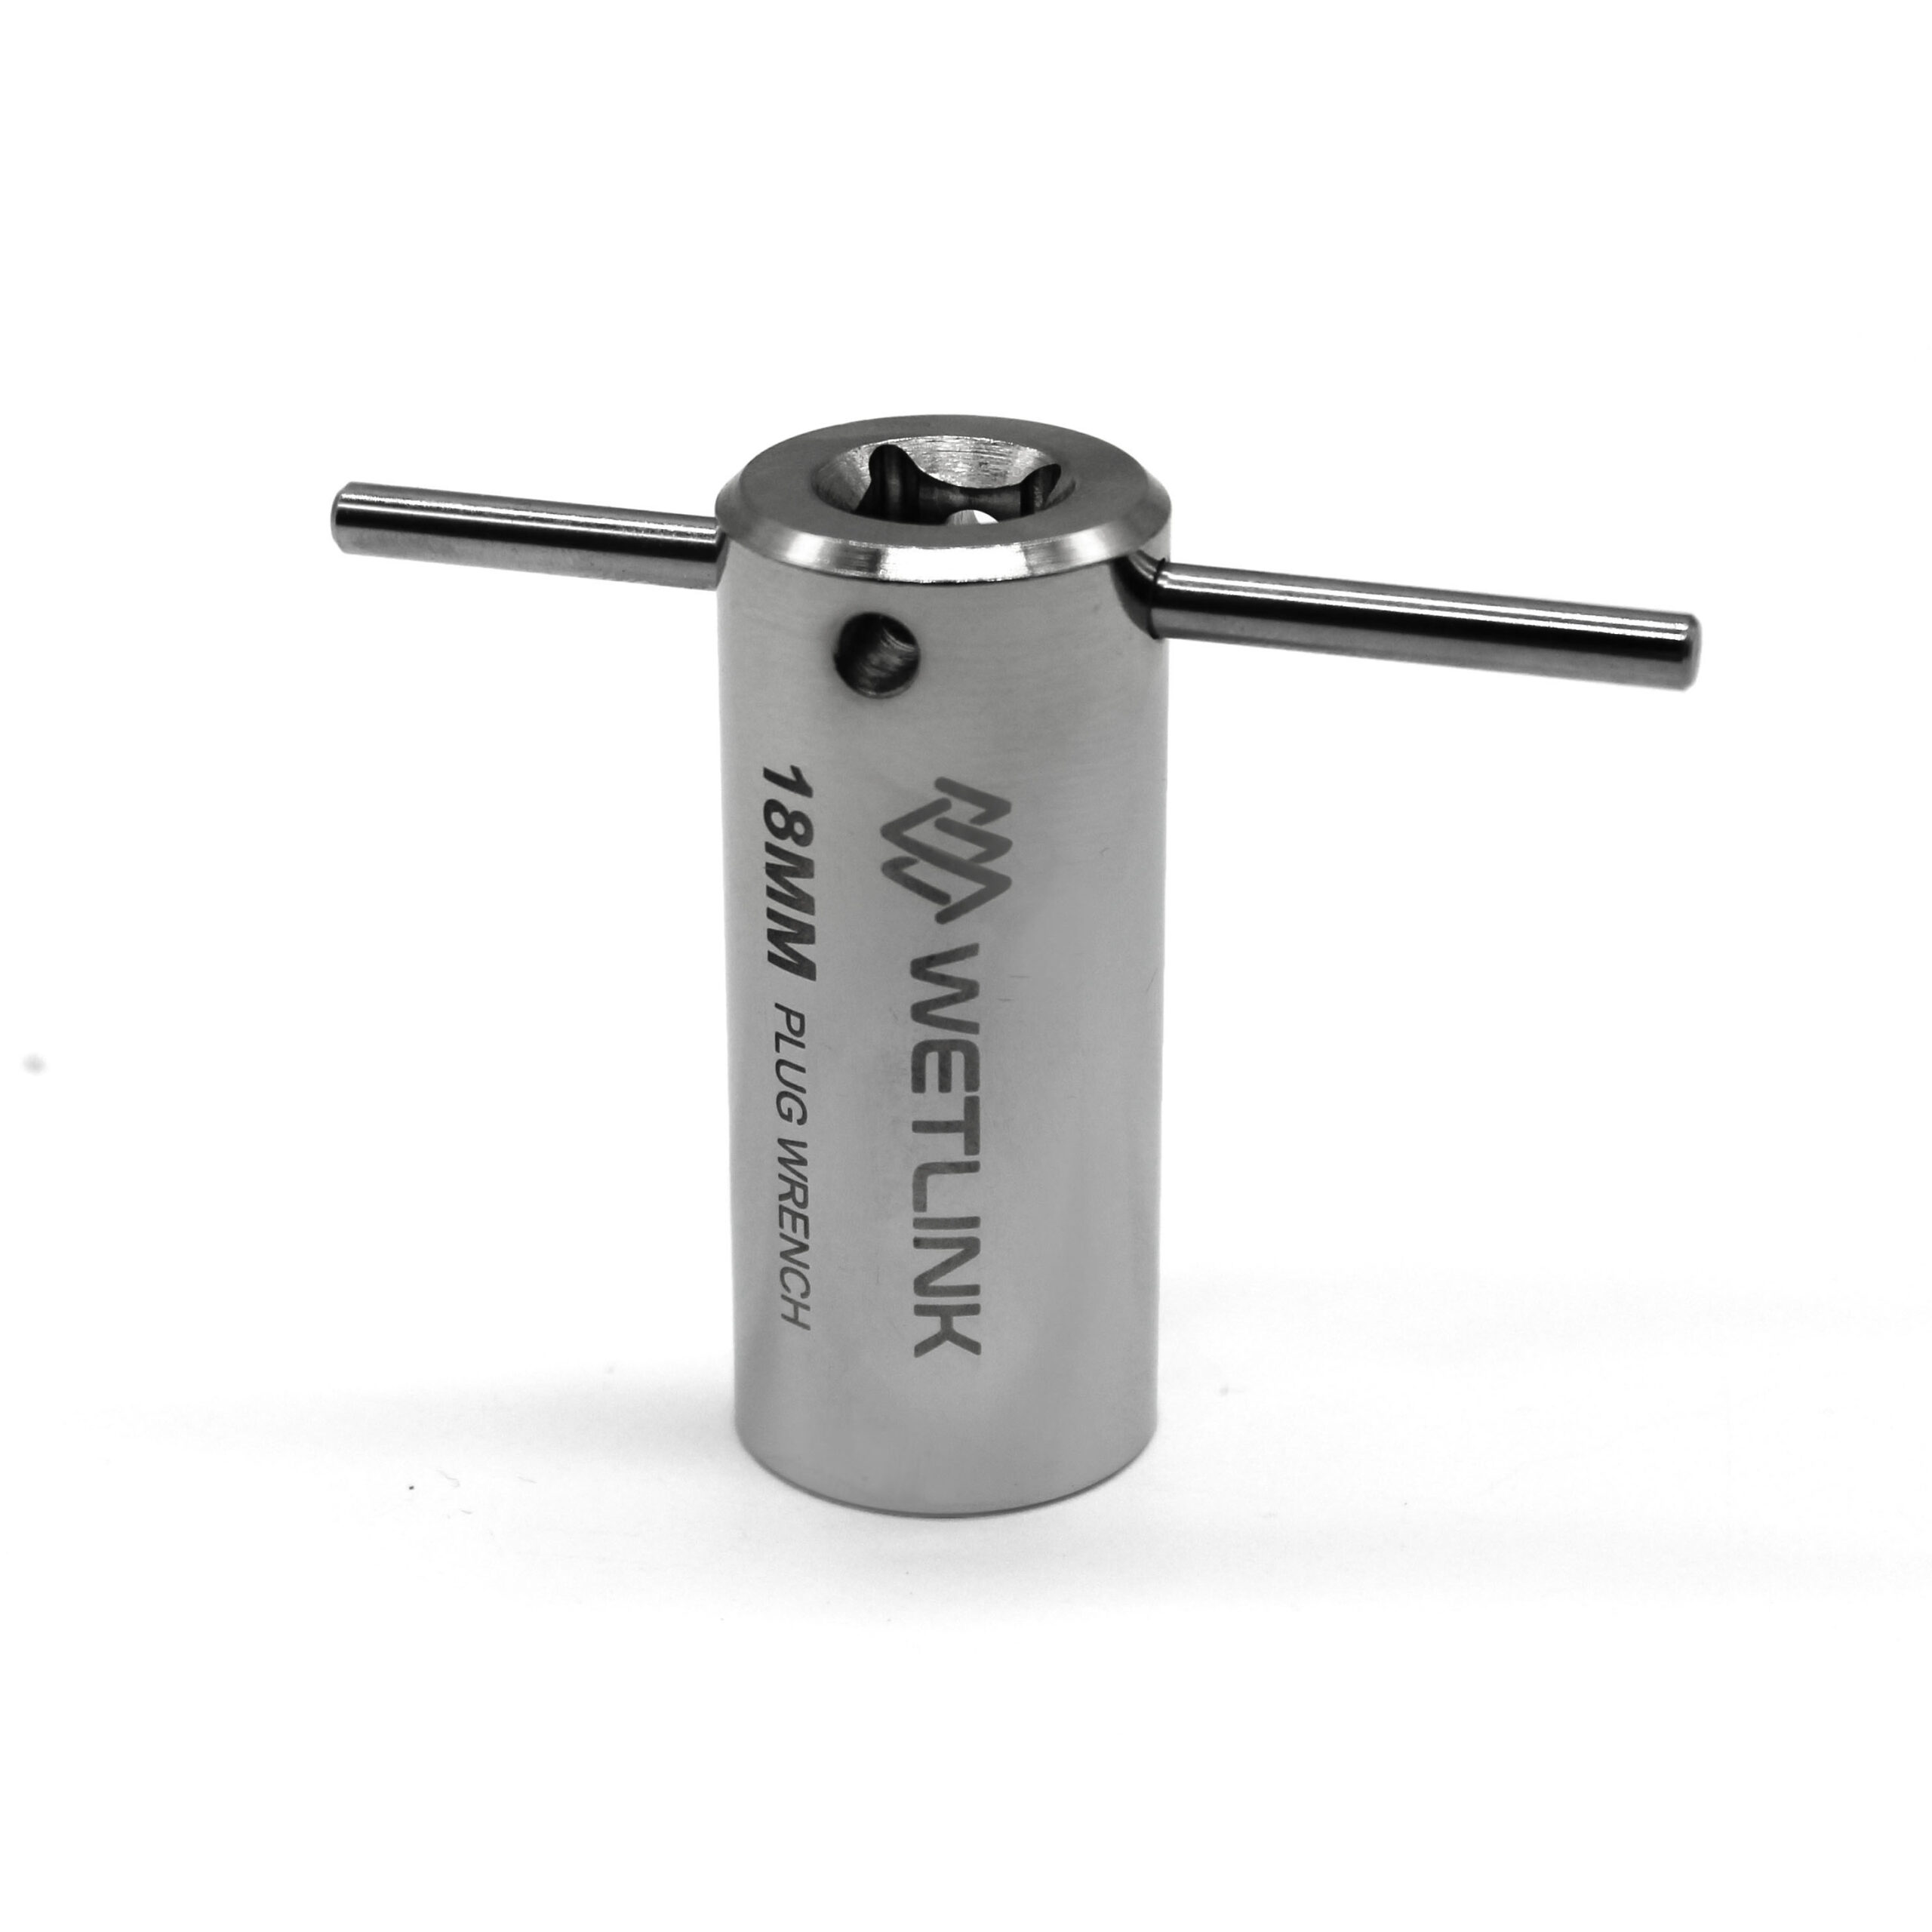  WetLink Penetrator Plug Wrench